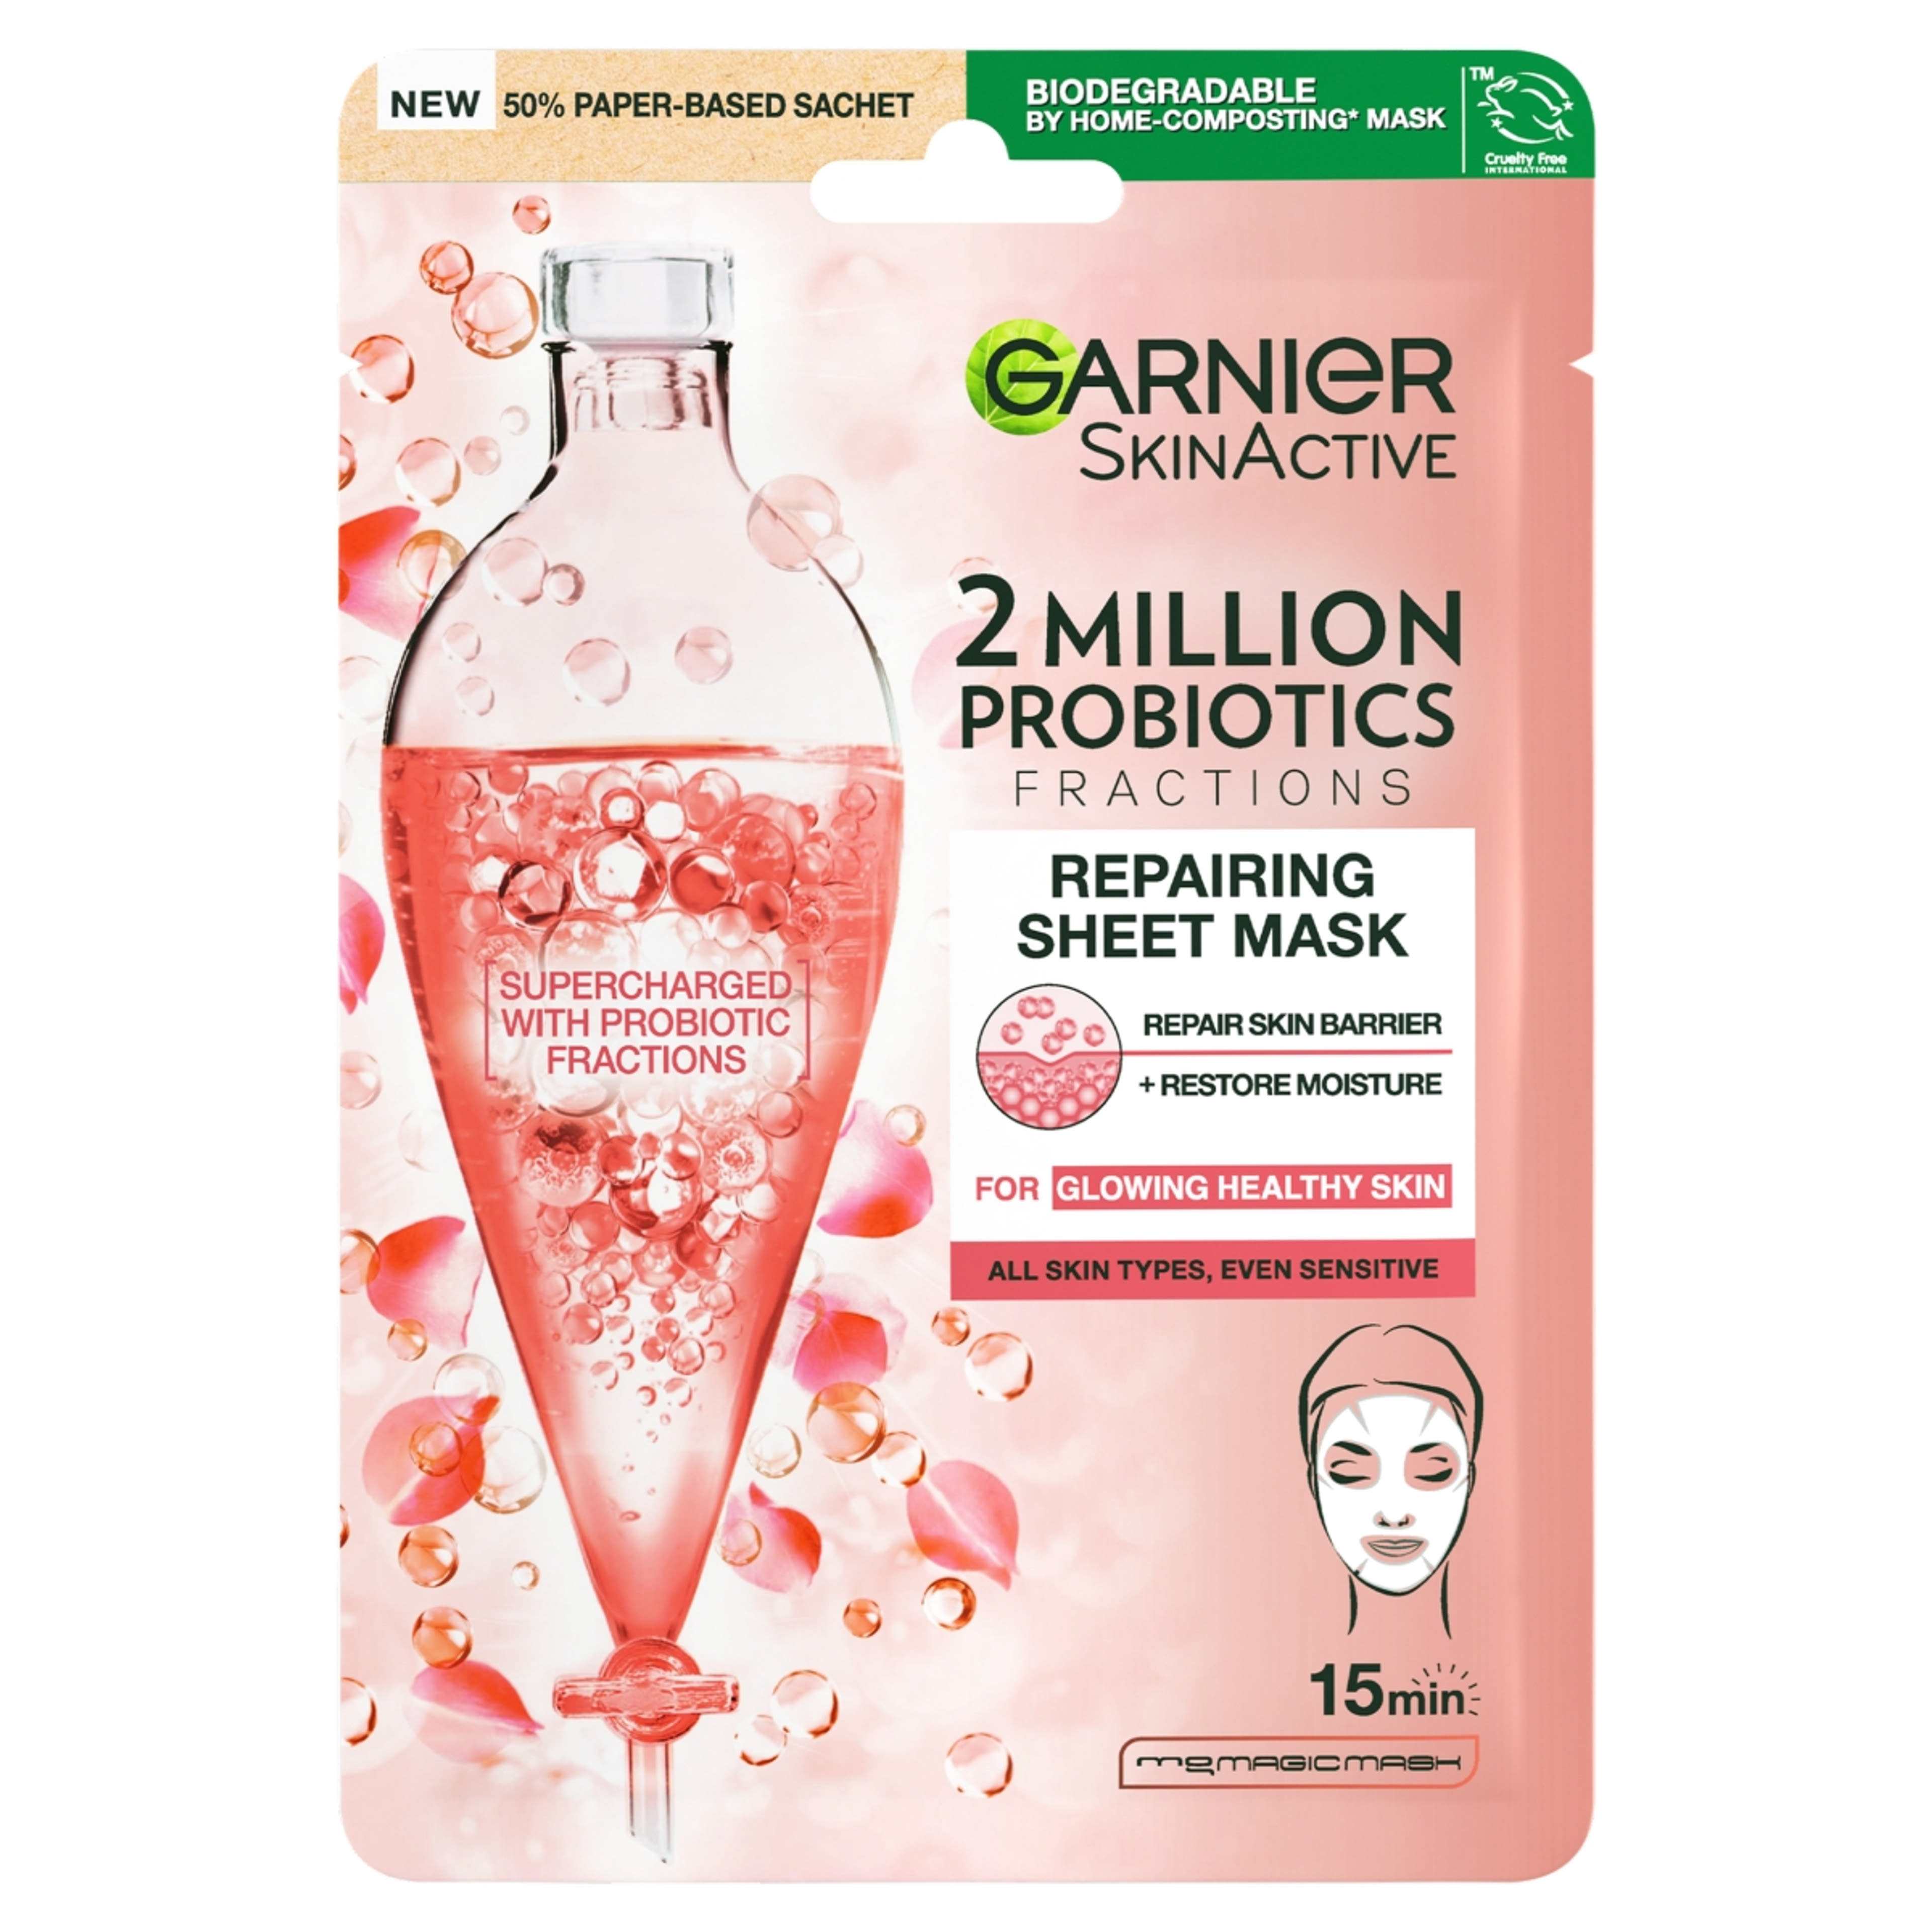 Garnier Skin Naturals texilmaszk probiotikummal  - 1 db-1